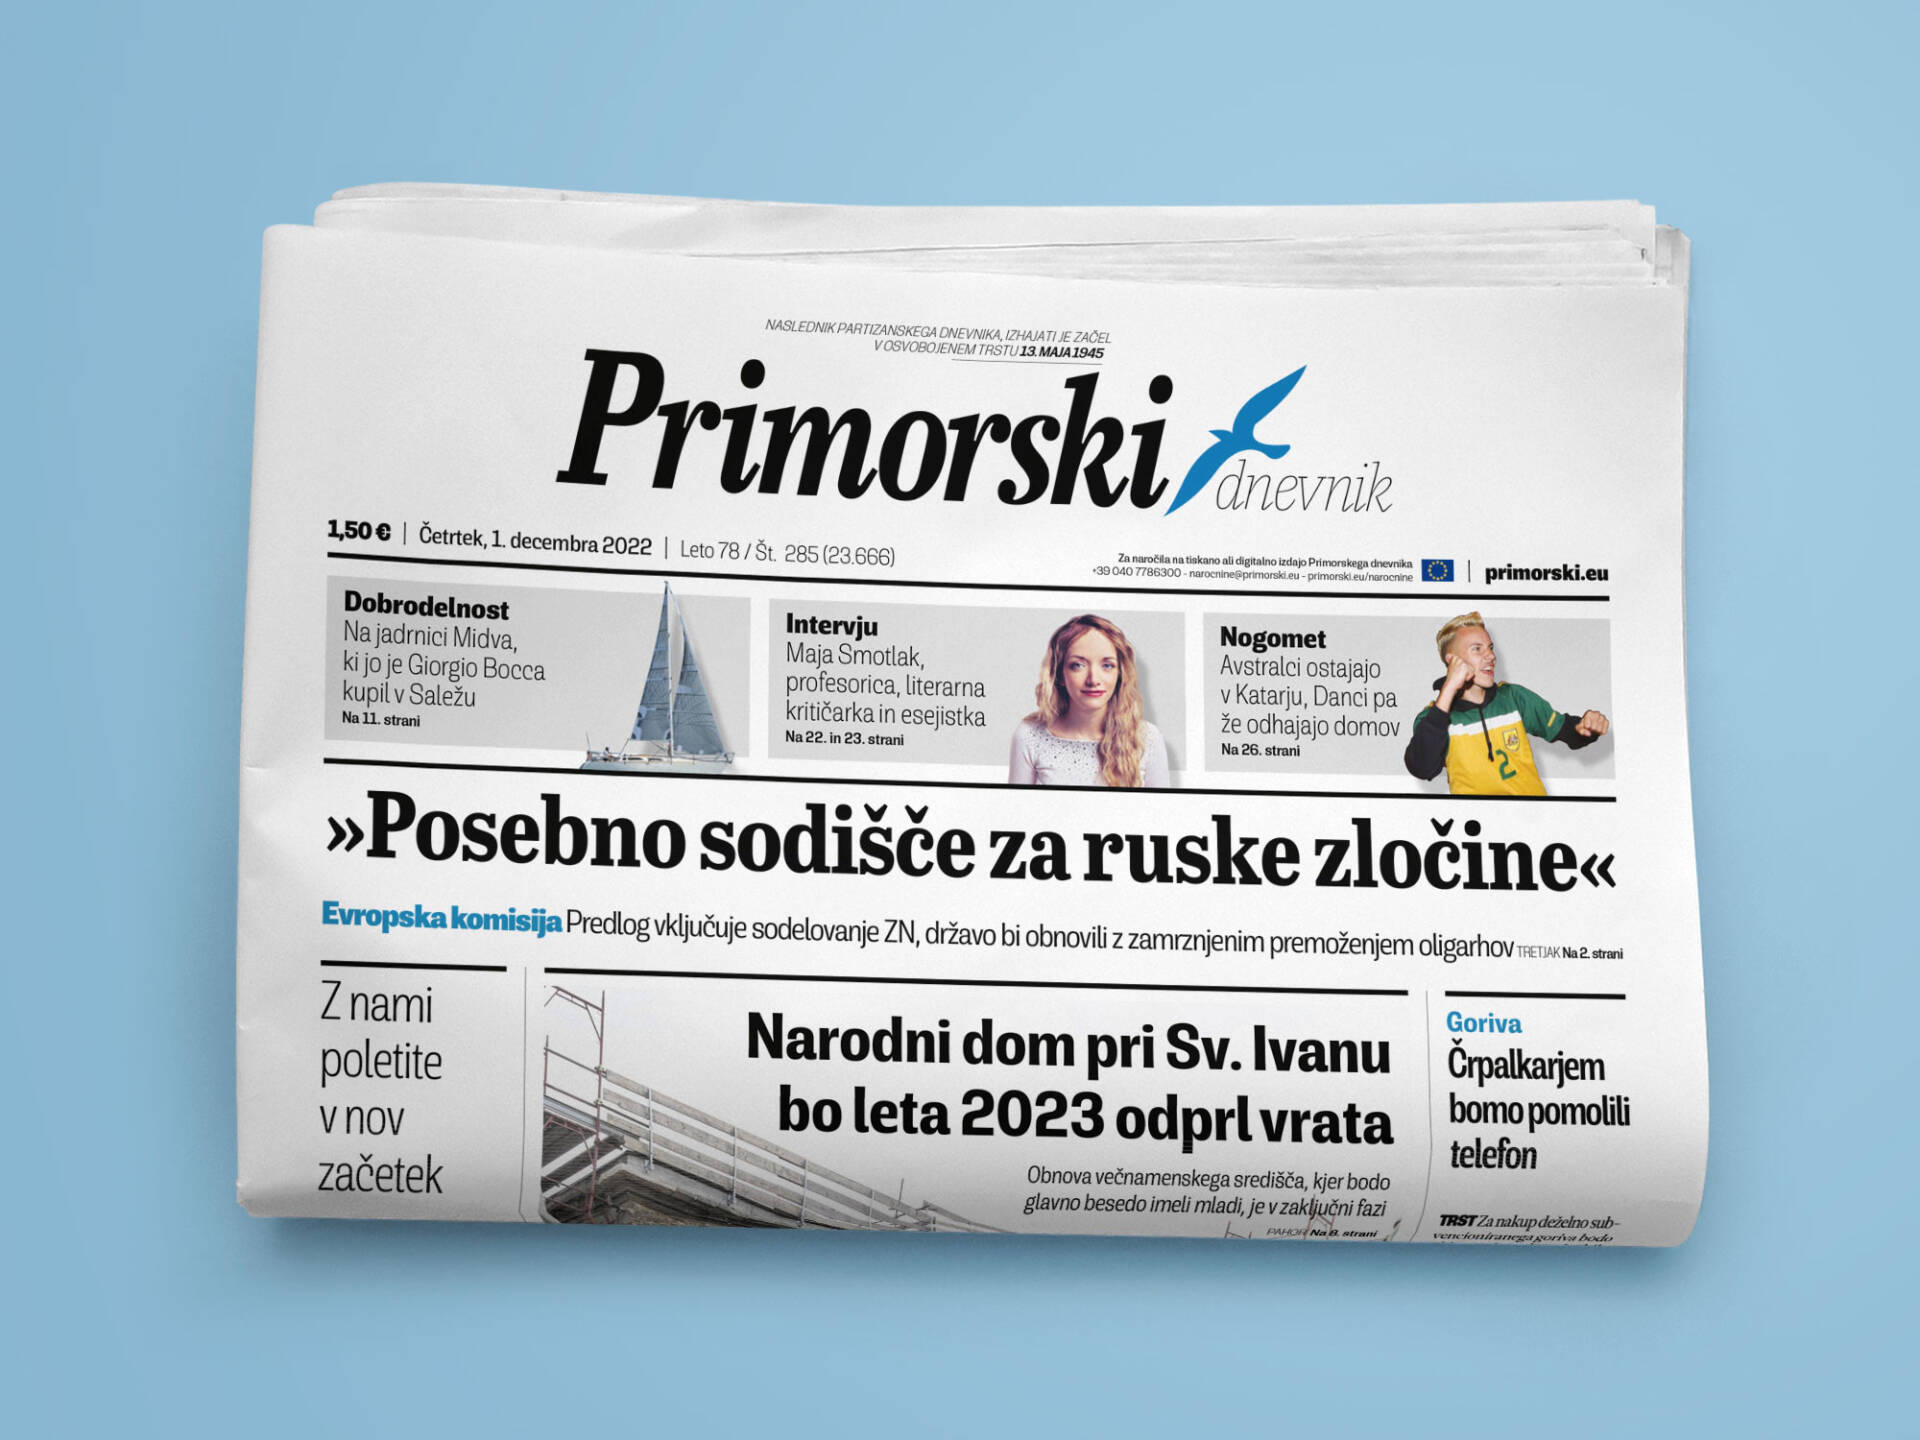 Primorski-dnevnik-Wenceslau-News-Design-01